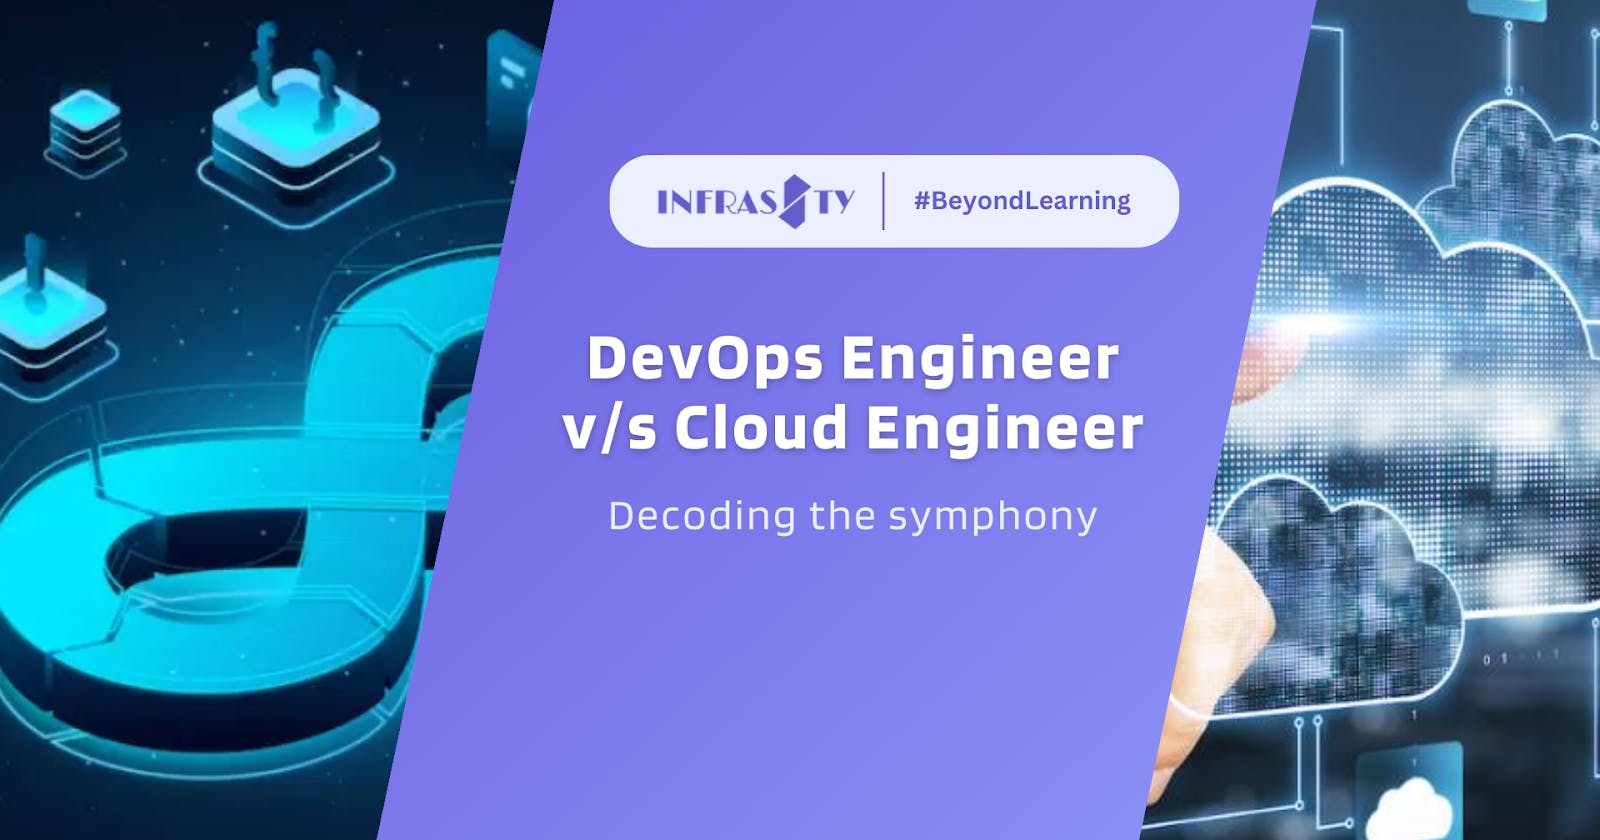 “DevOps Engineer v/s Cloud Engineer: Decoding the symphony”